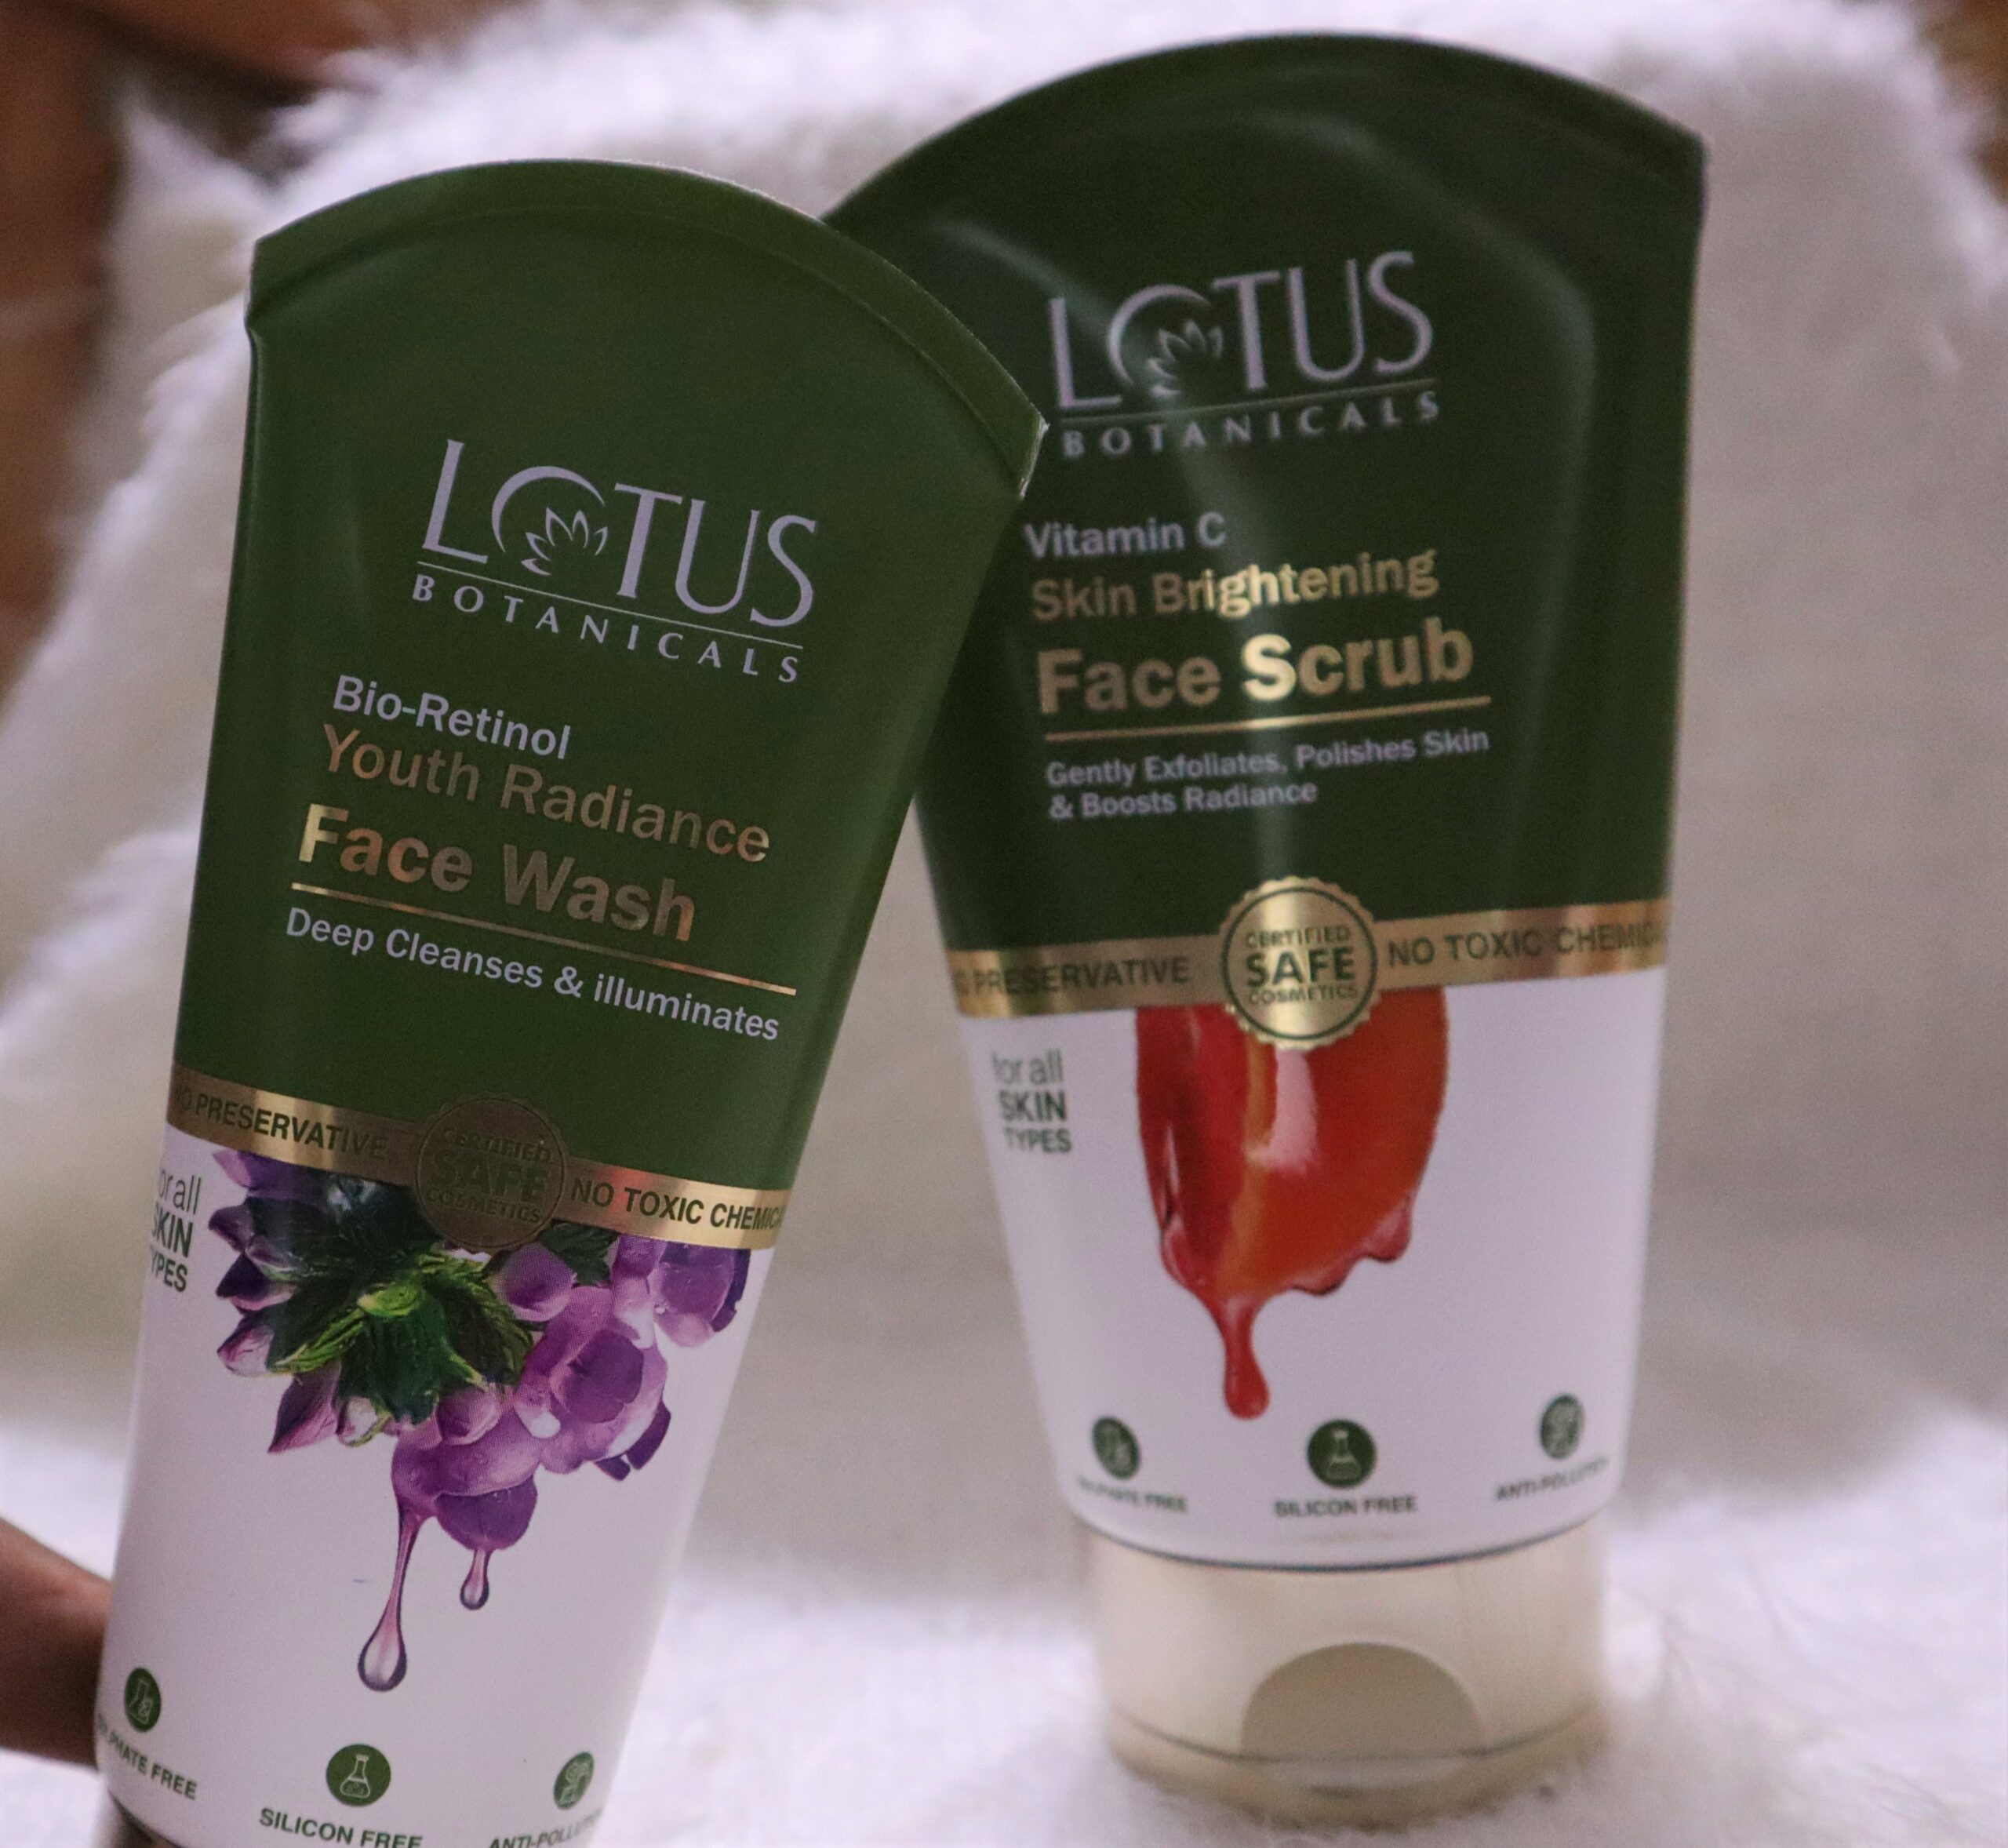 Lotus Botanicals Bio-Retinol Youth Radiance Face Wash